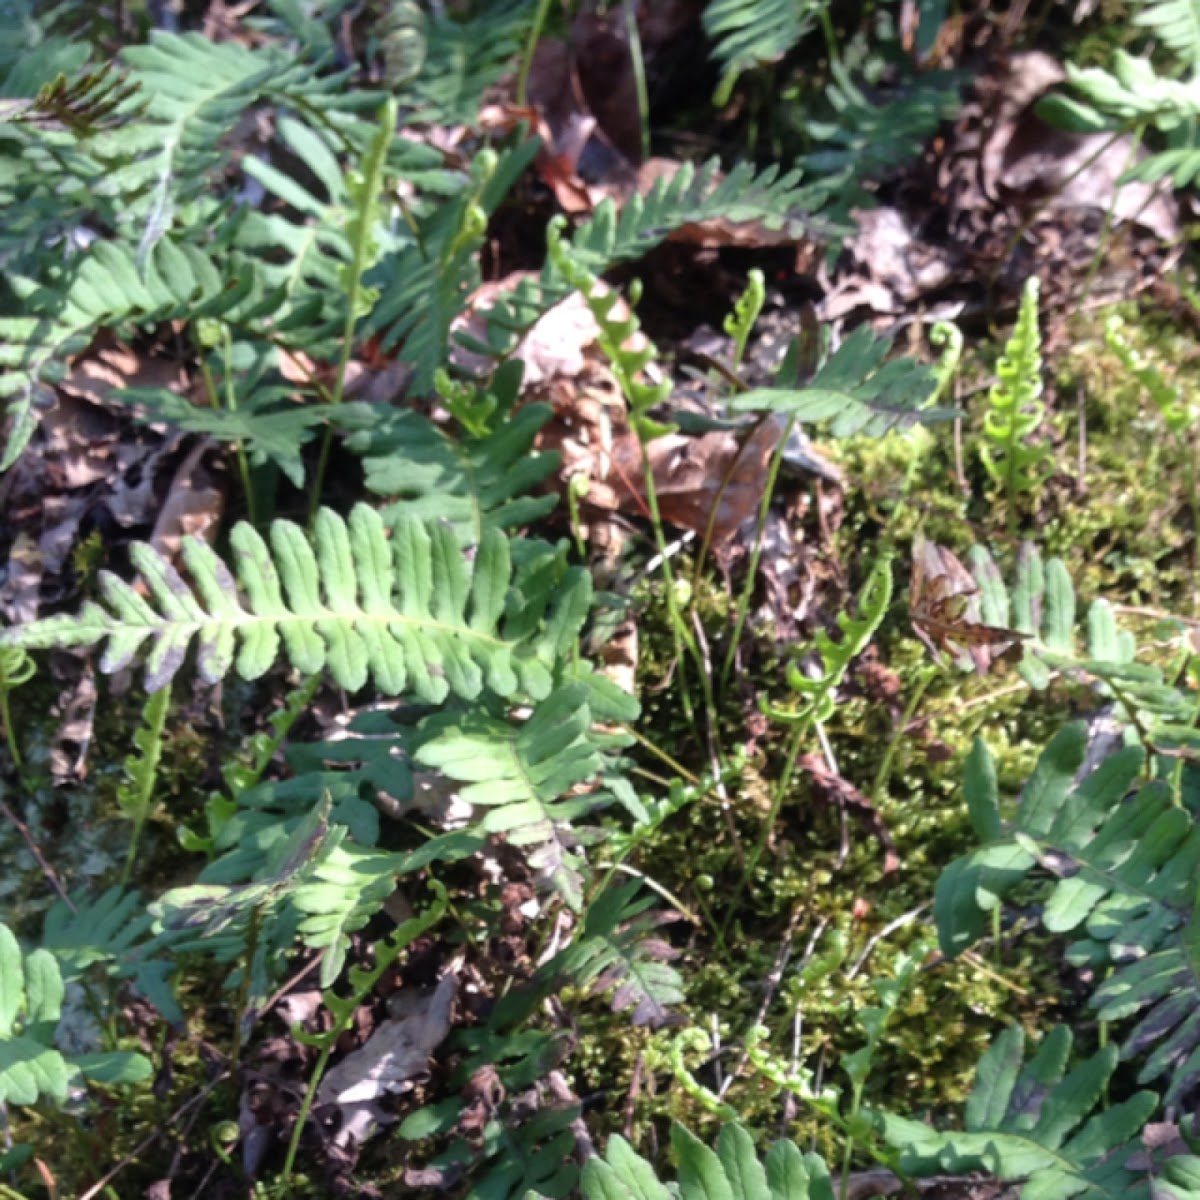 Polypody fern